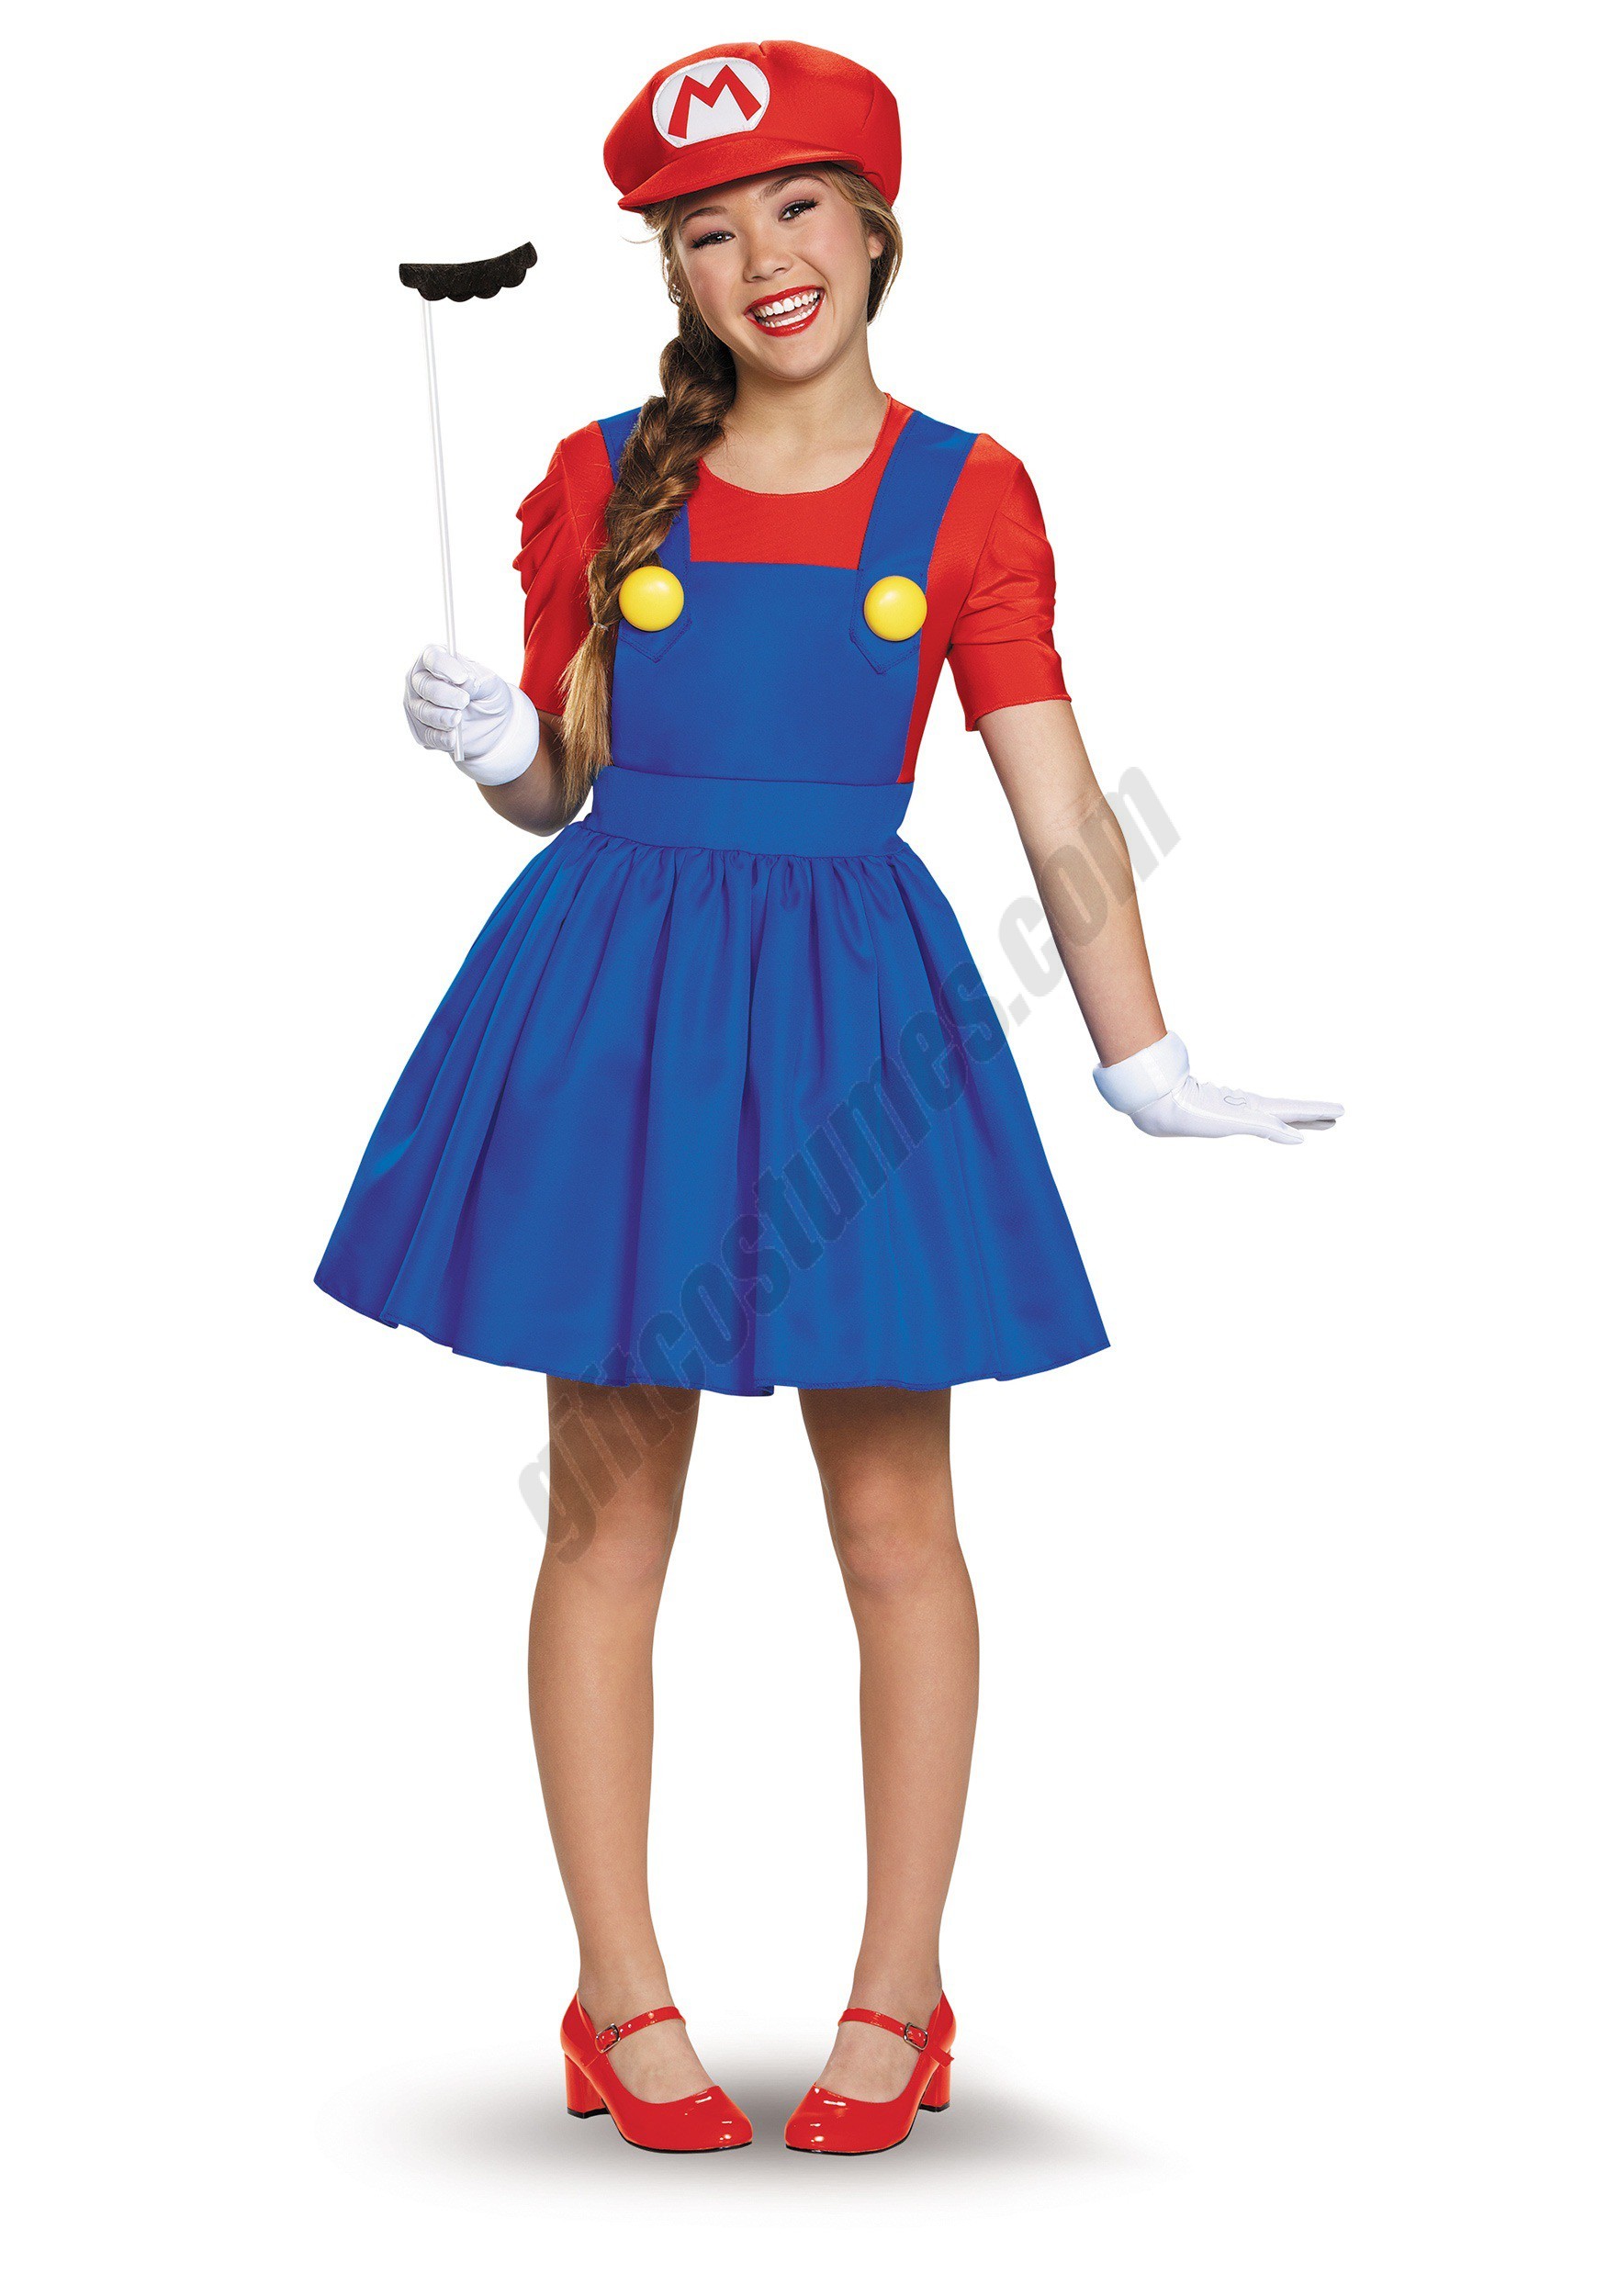 Tweens Mario Skirt Costume Promotions - Tweens Mario Skirt Costume Promotions